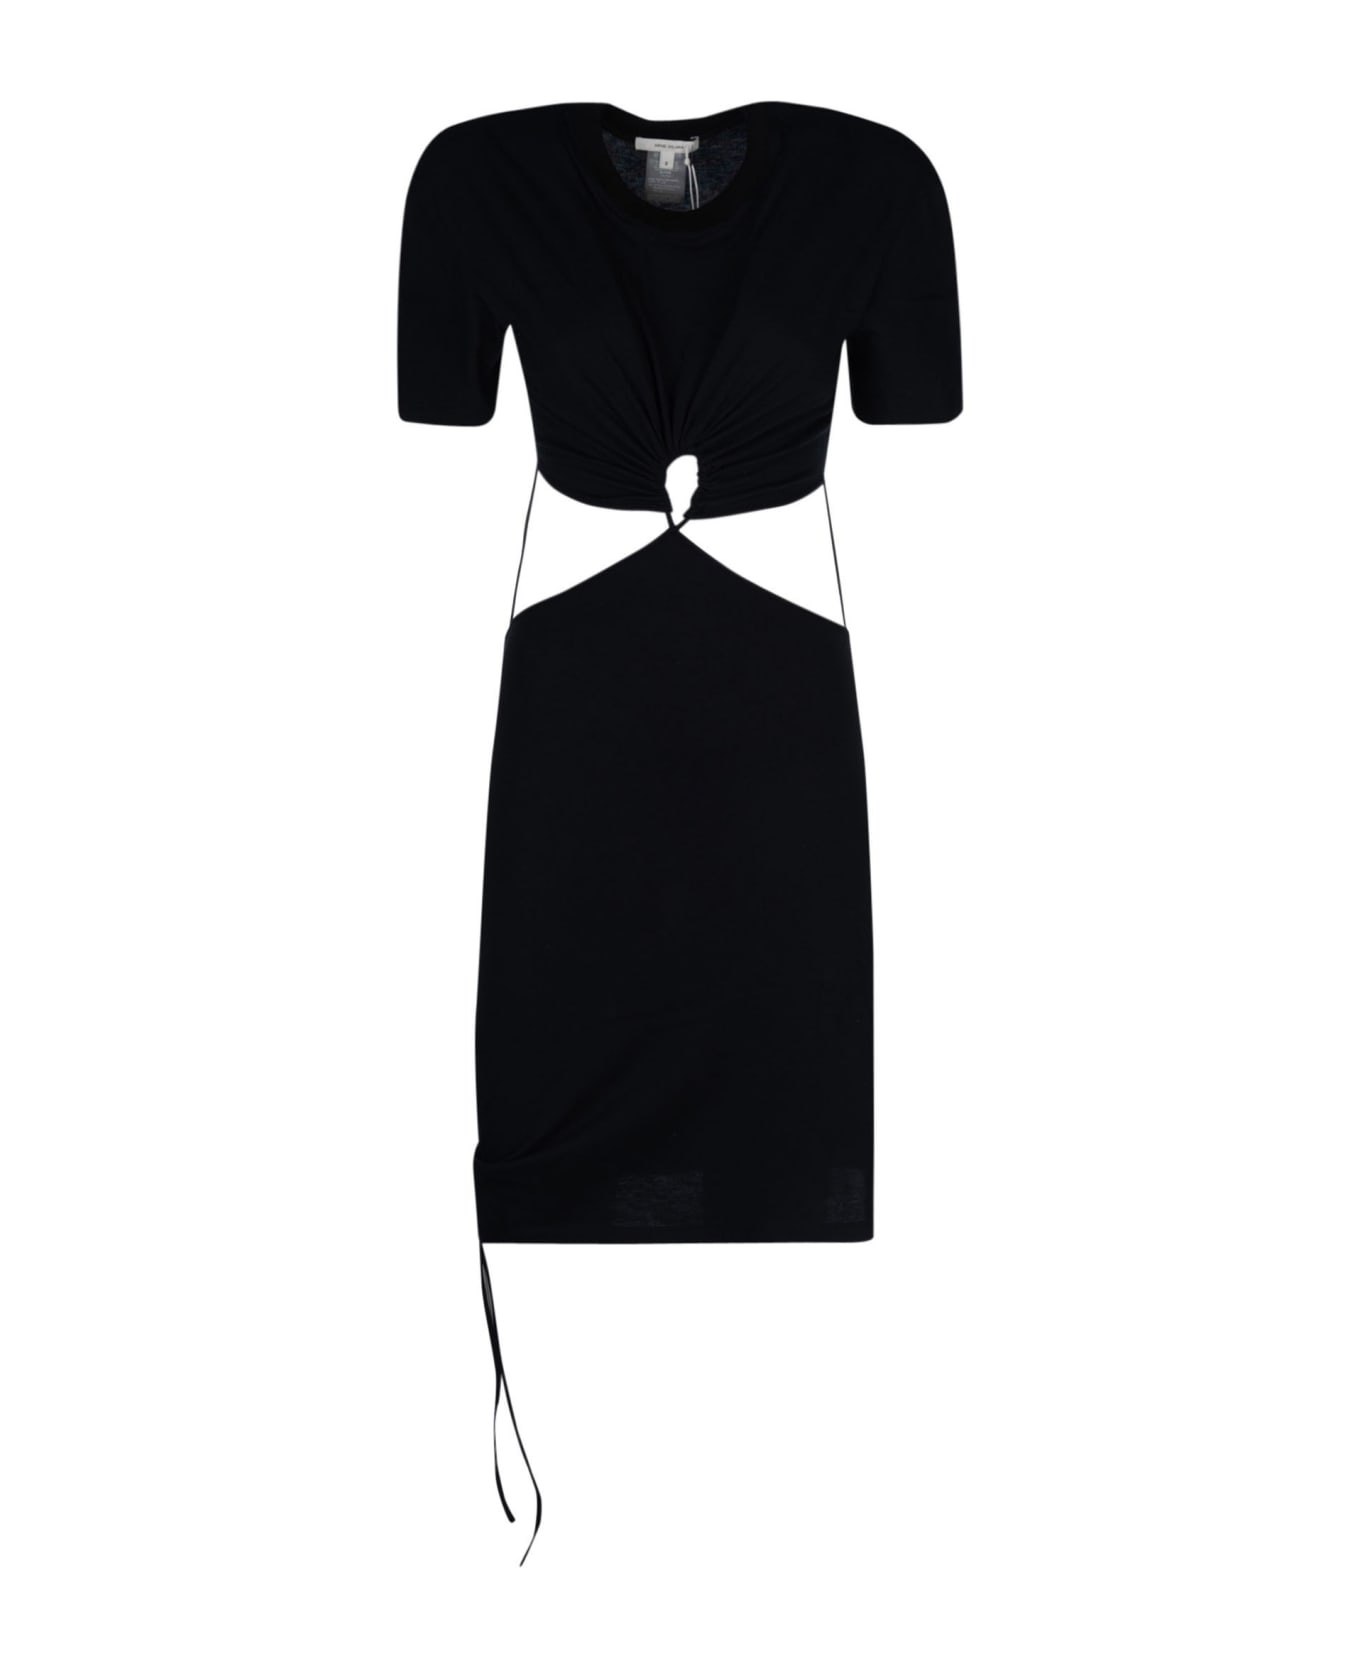 Nensi Dojaka T-shirt Dress - Black ワンピース＆ドレス